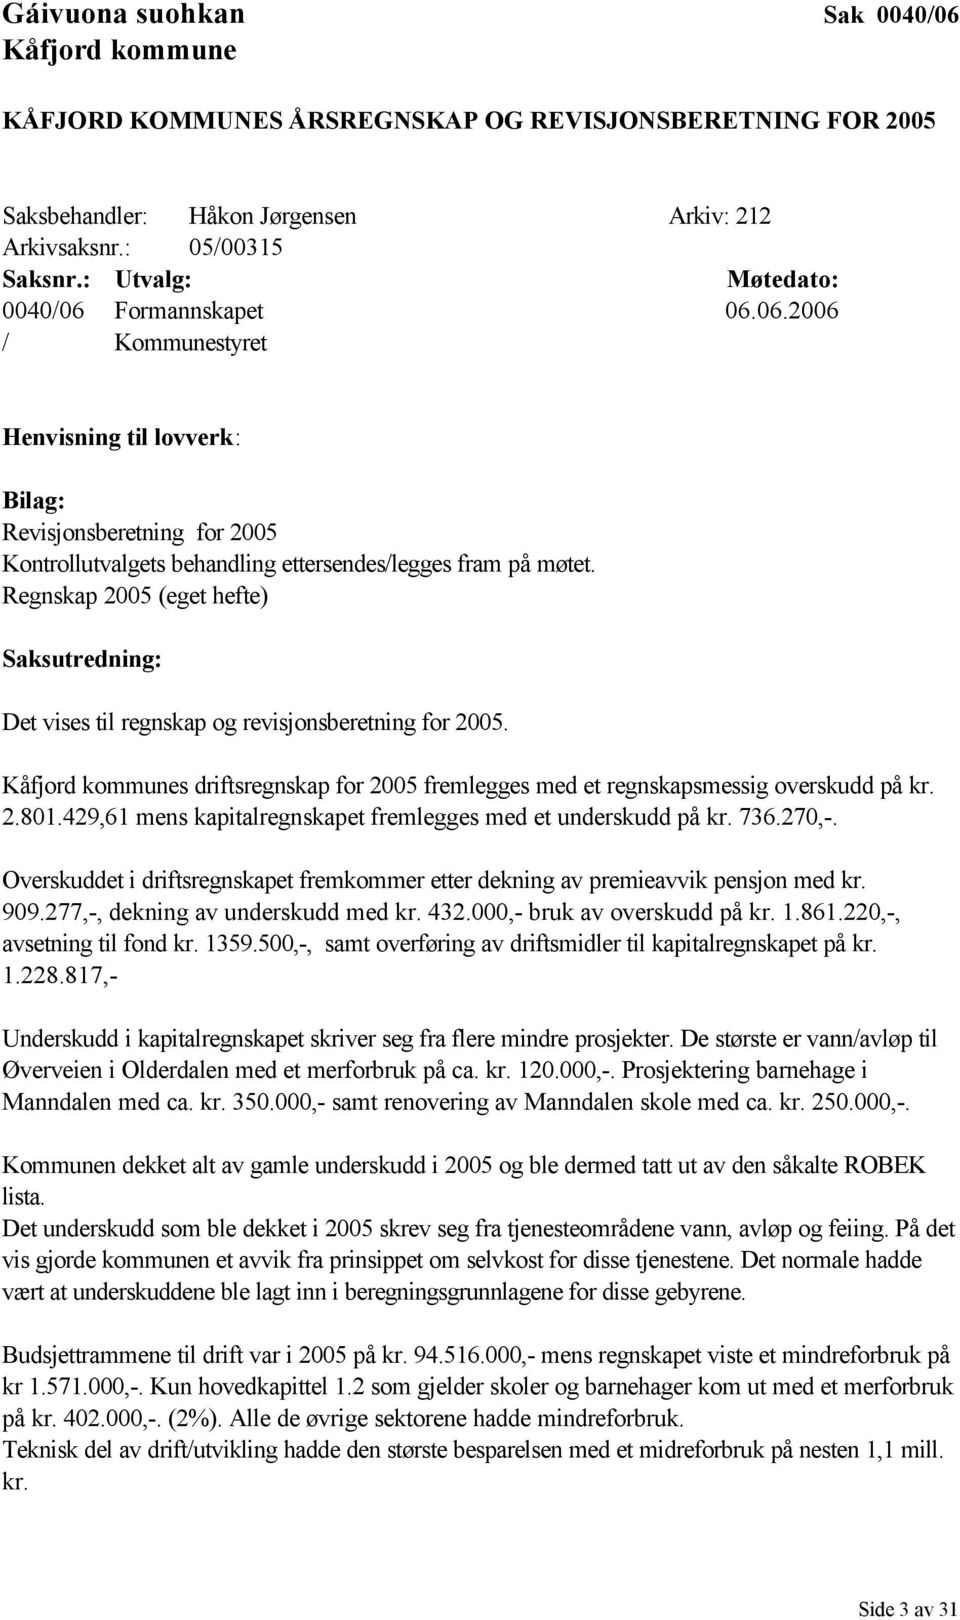 Regnskap 2005 (eget hefte) Saksutredning: Det vises til regnskap og revisjonsberetning for 2005. Kåfjord kommunes driftsregnskap for 2005 fremlegges med et regnskapsmessig overskudd på kr. 2.801.